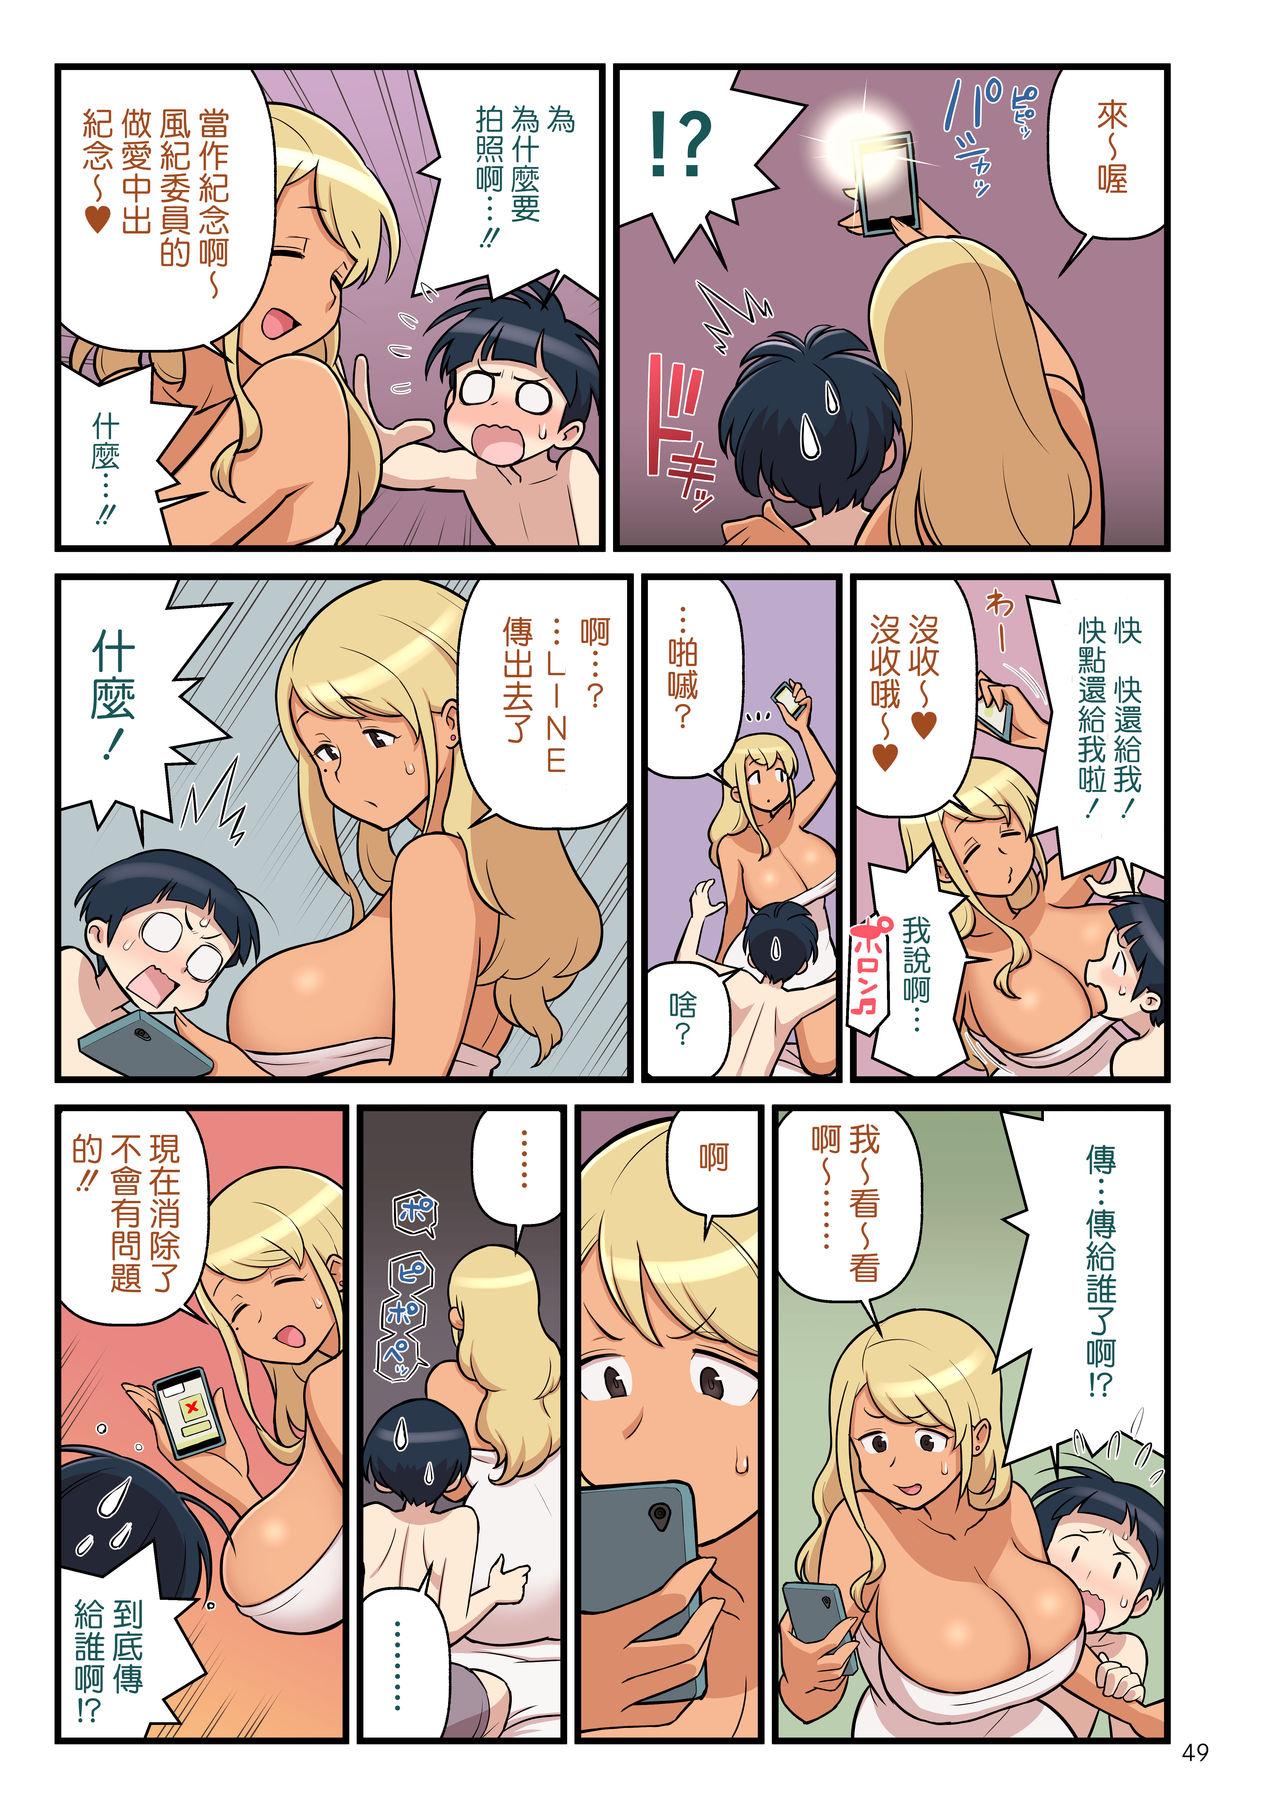 Follada Kuro Gal VS Fuuki Iin - Black Gal VS Prefect 1 - Original Bigboobs - Page 50